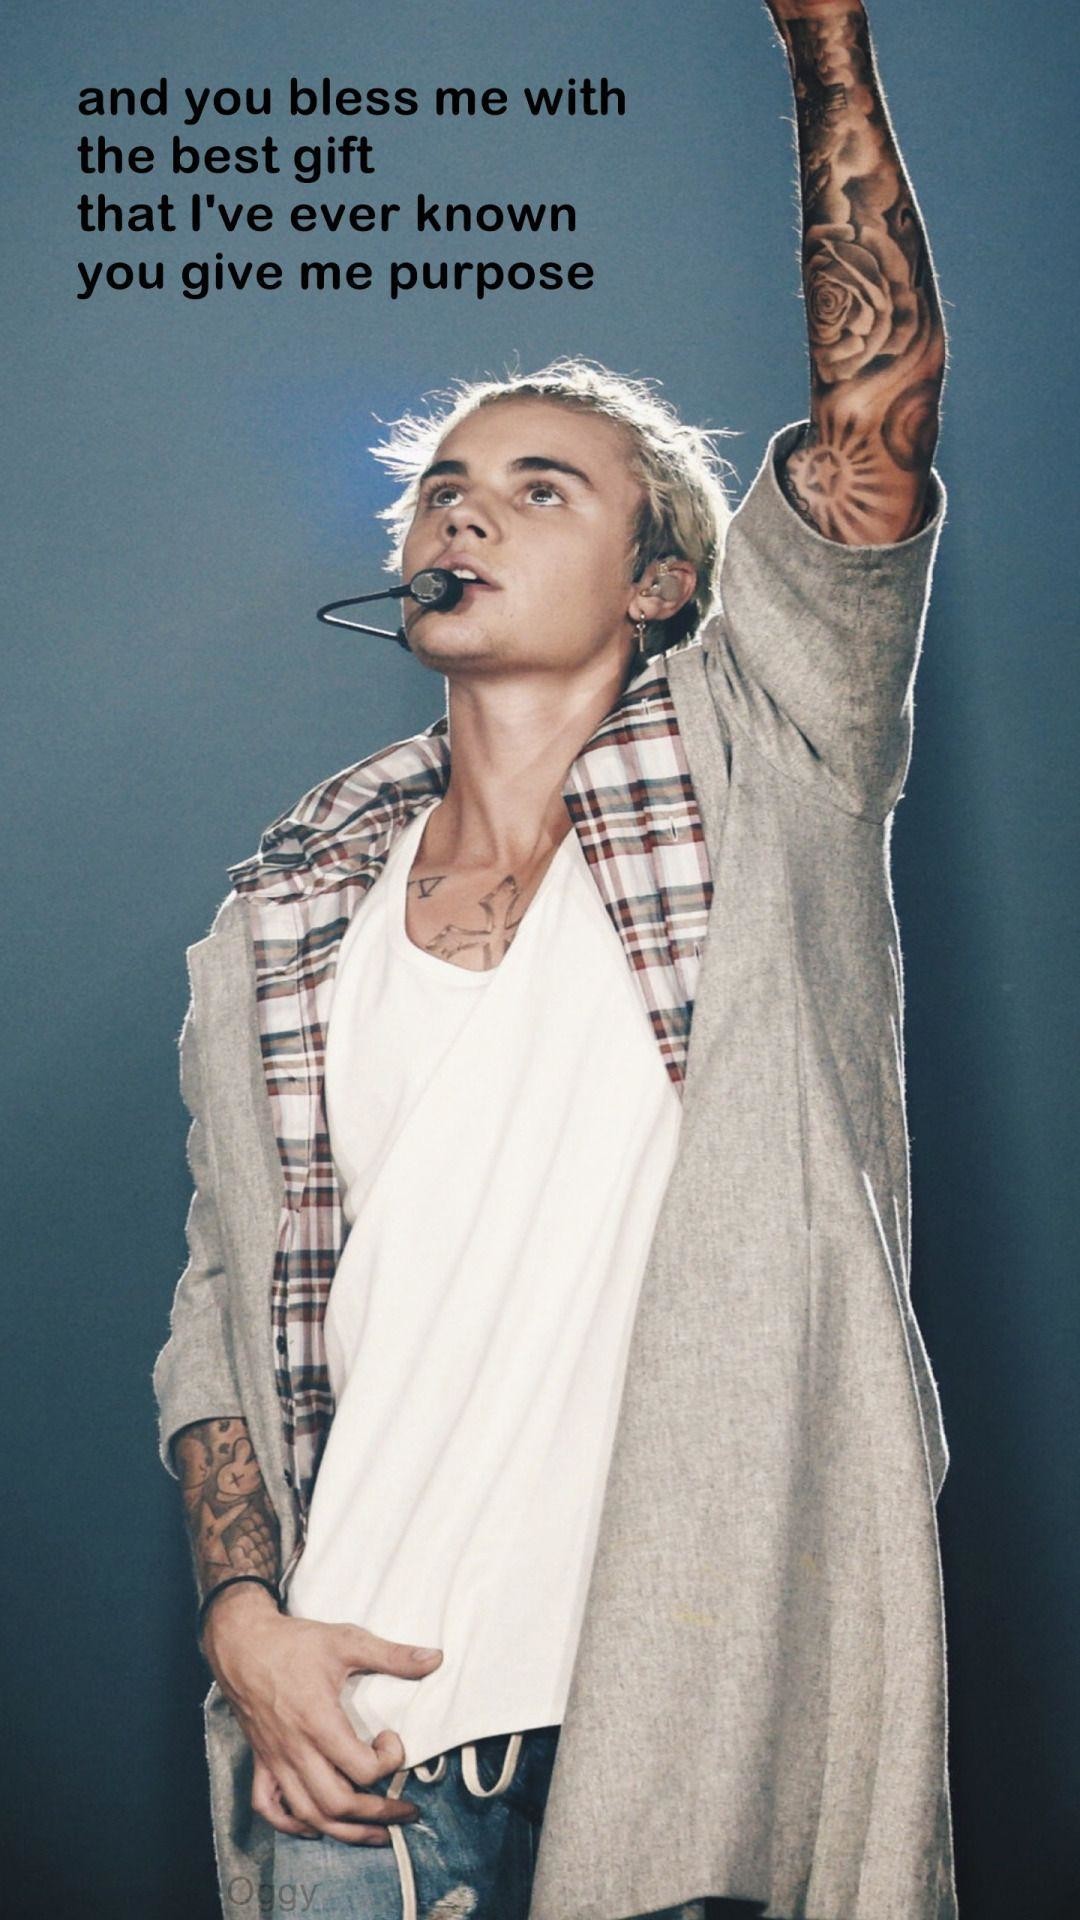 21 Justin Bieber Purpose World Tour Wallpapers On Wallpapersafari